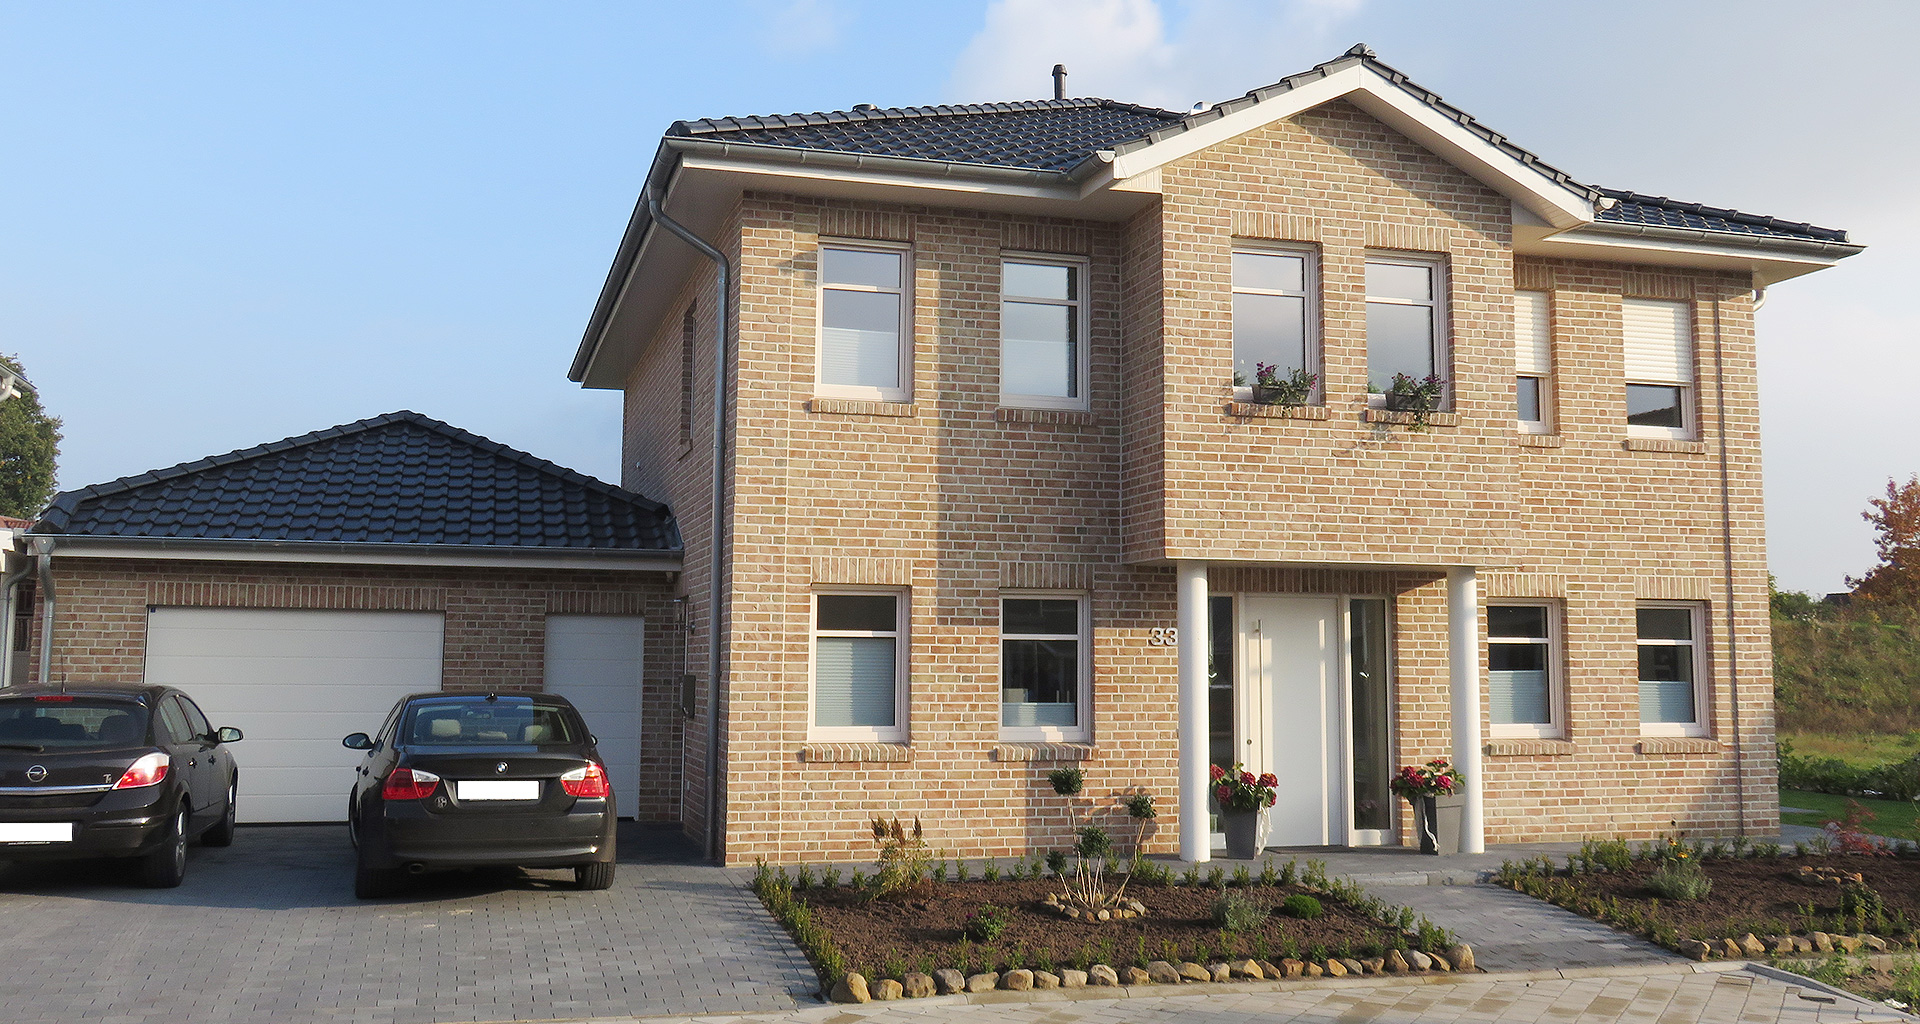 Einfamilienhaus Front mit Eingang und Carport in Wietmarschen-Lohne Emsland 2015